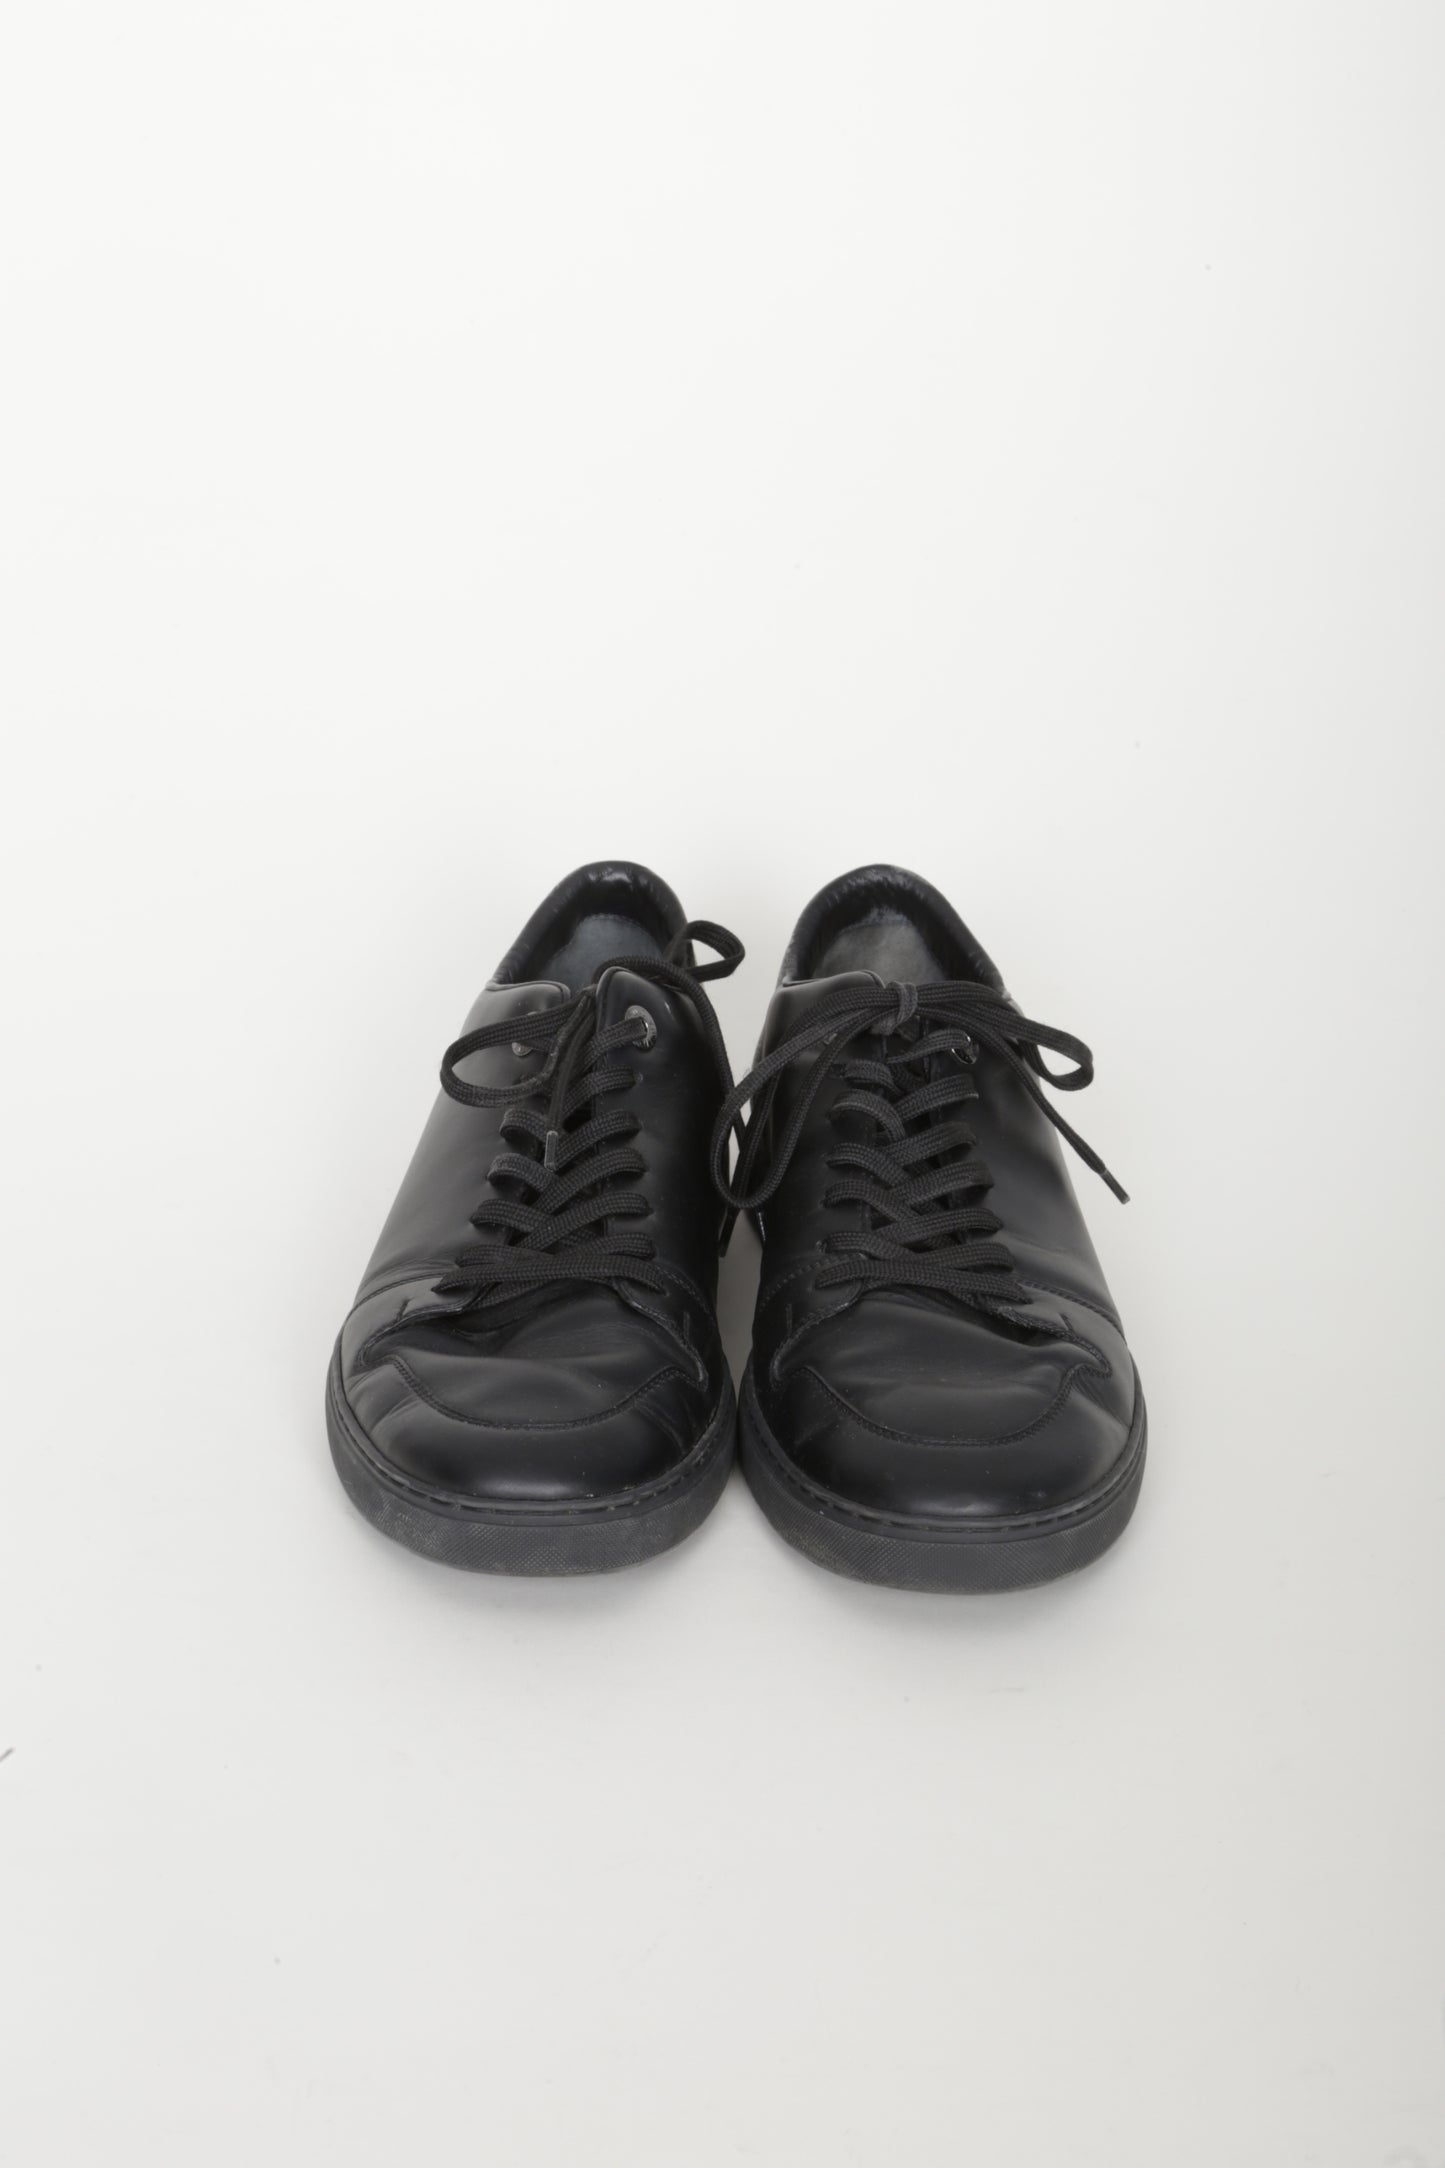 Louis Vuitton Mens Black Shoes Size 7